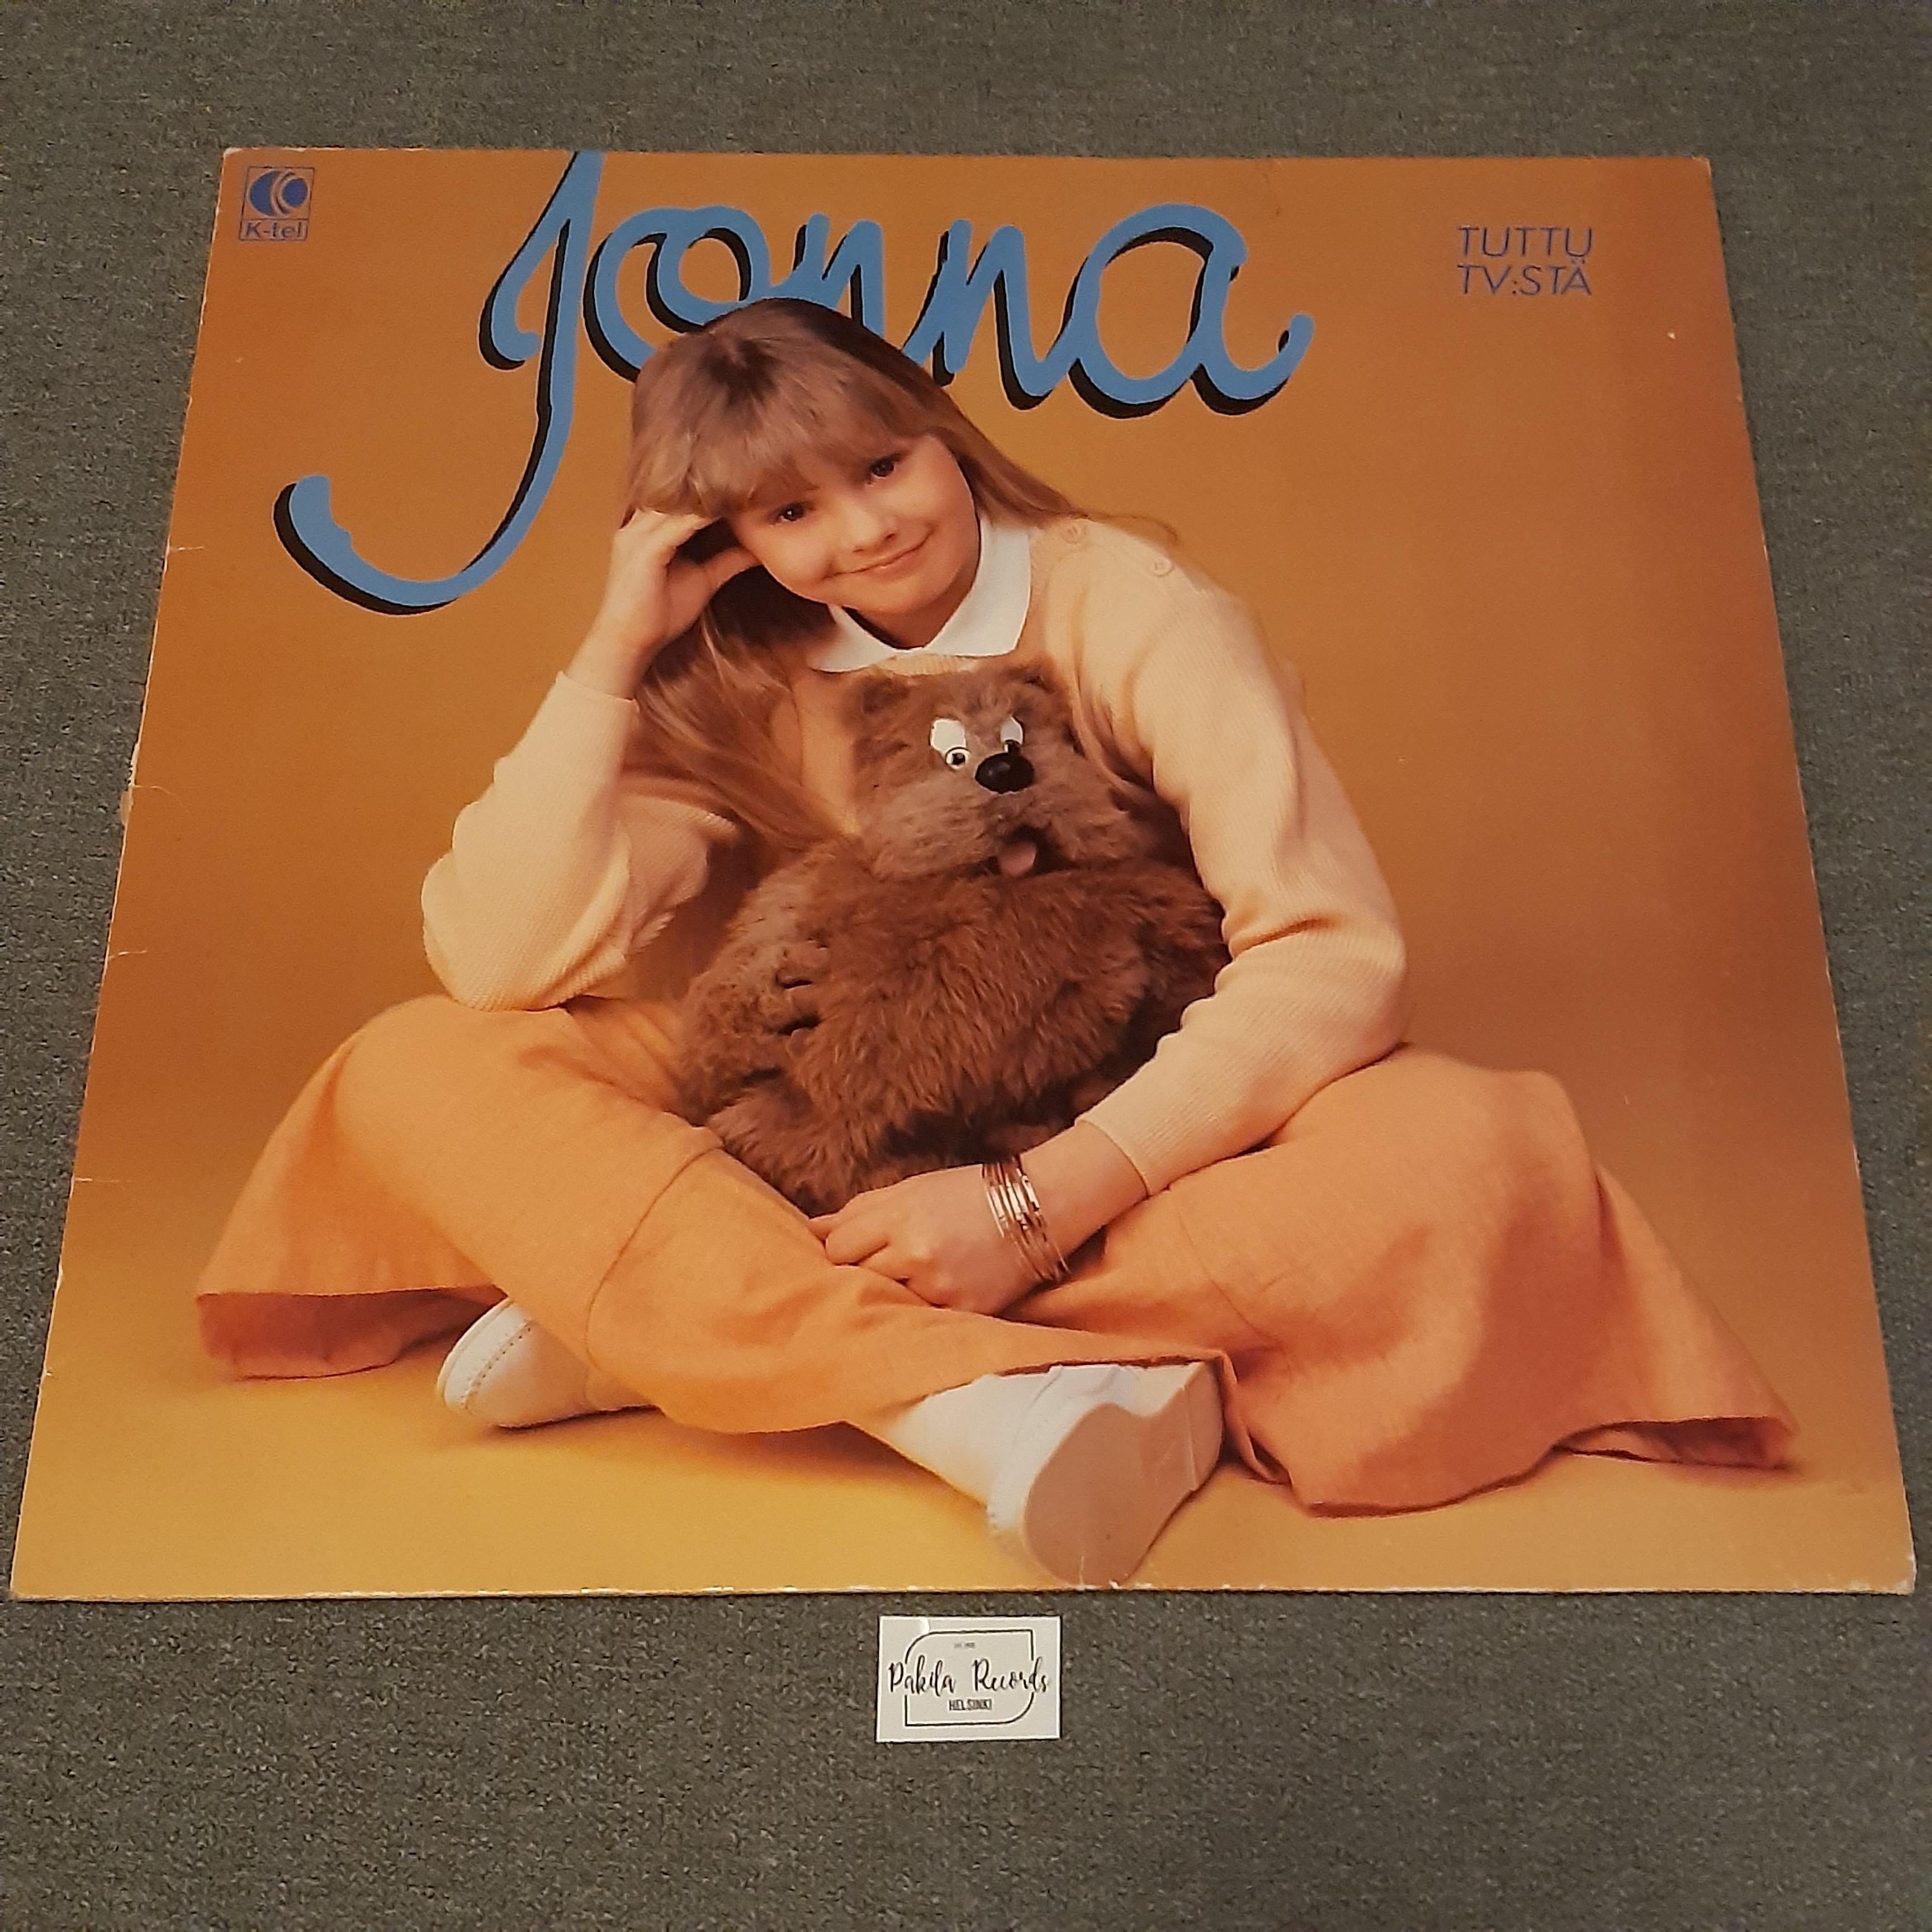 Jonna - Jonna - LP (käytetty)